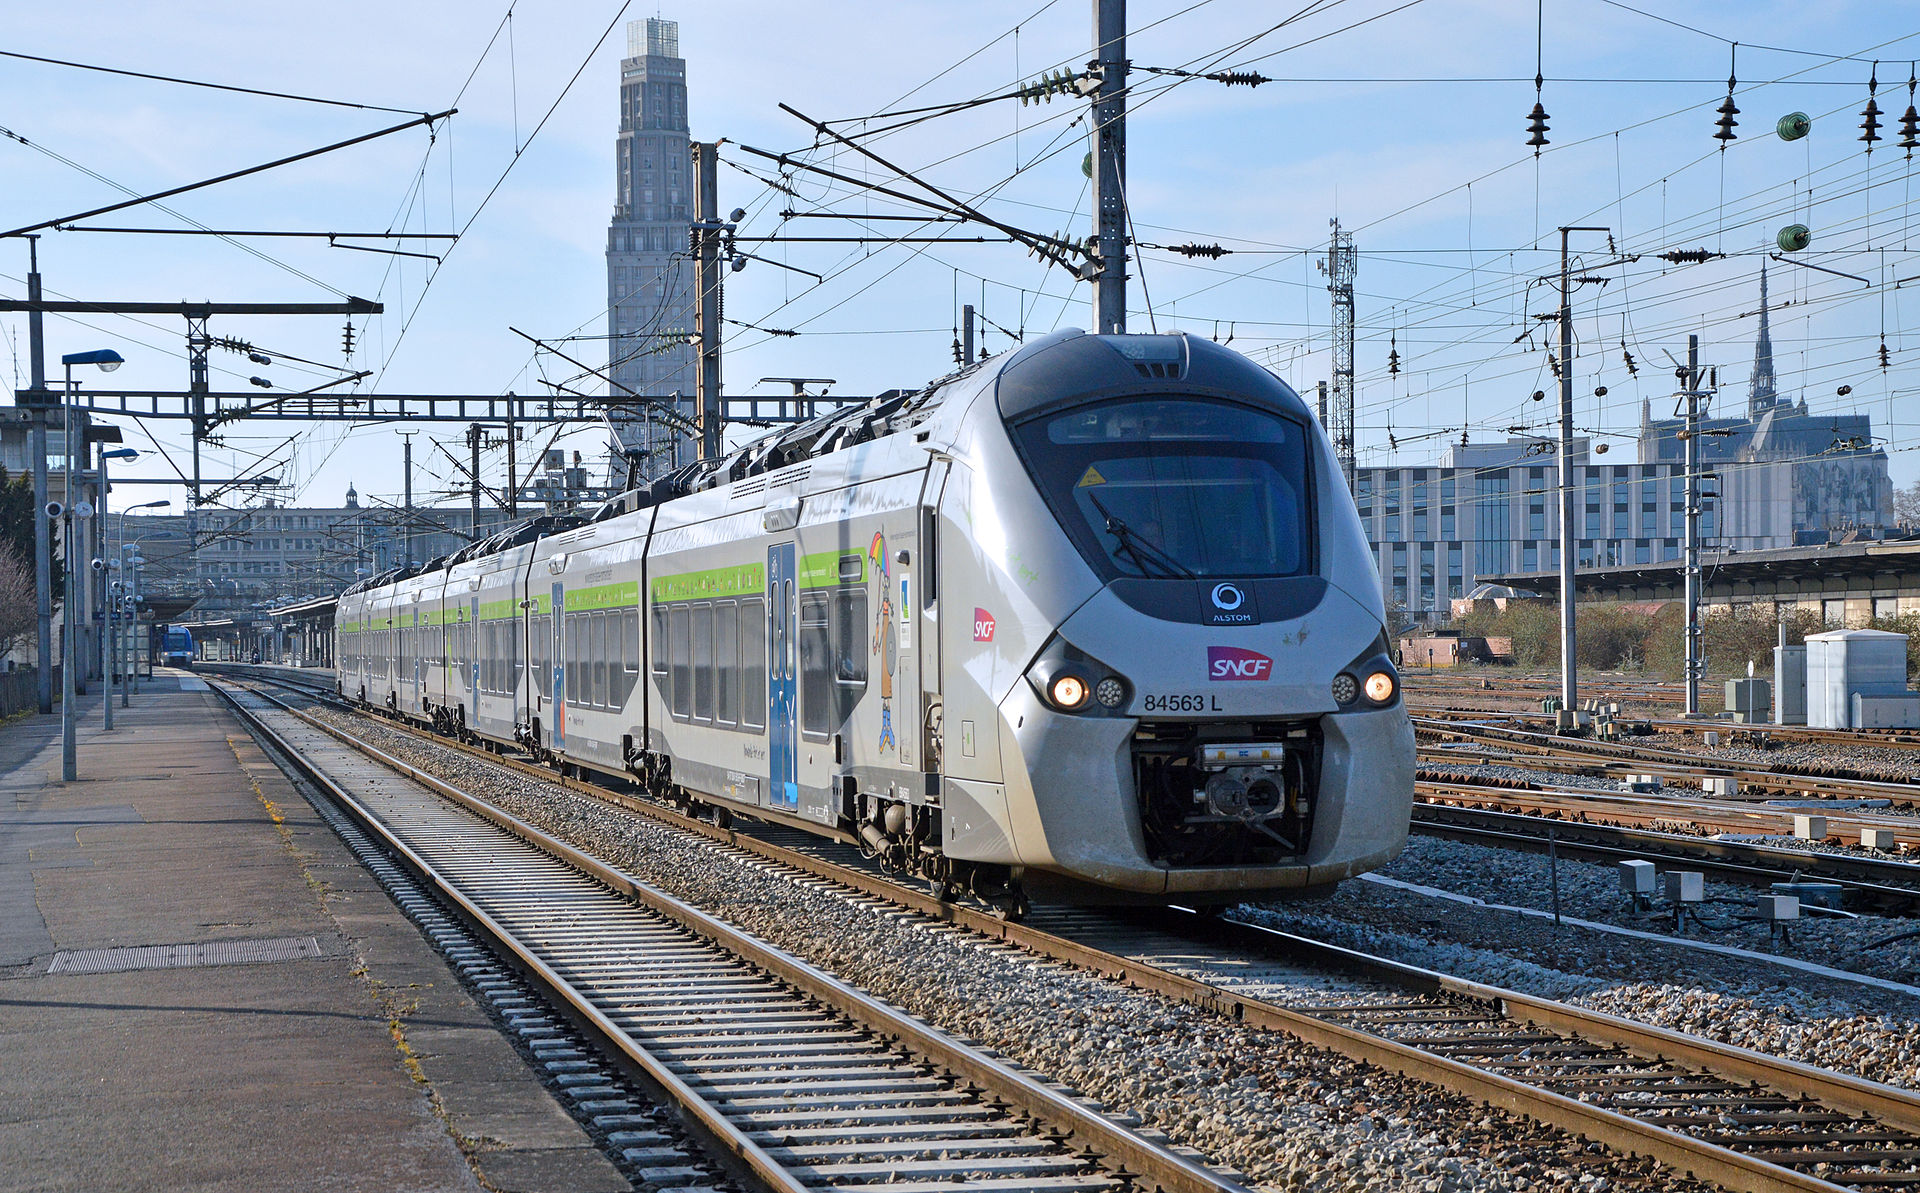 Le 9 mars, journée noire à la SNCF